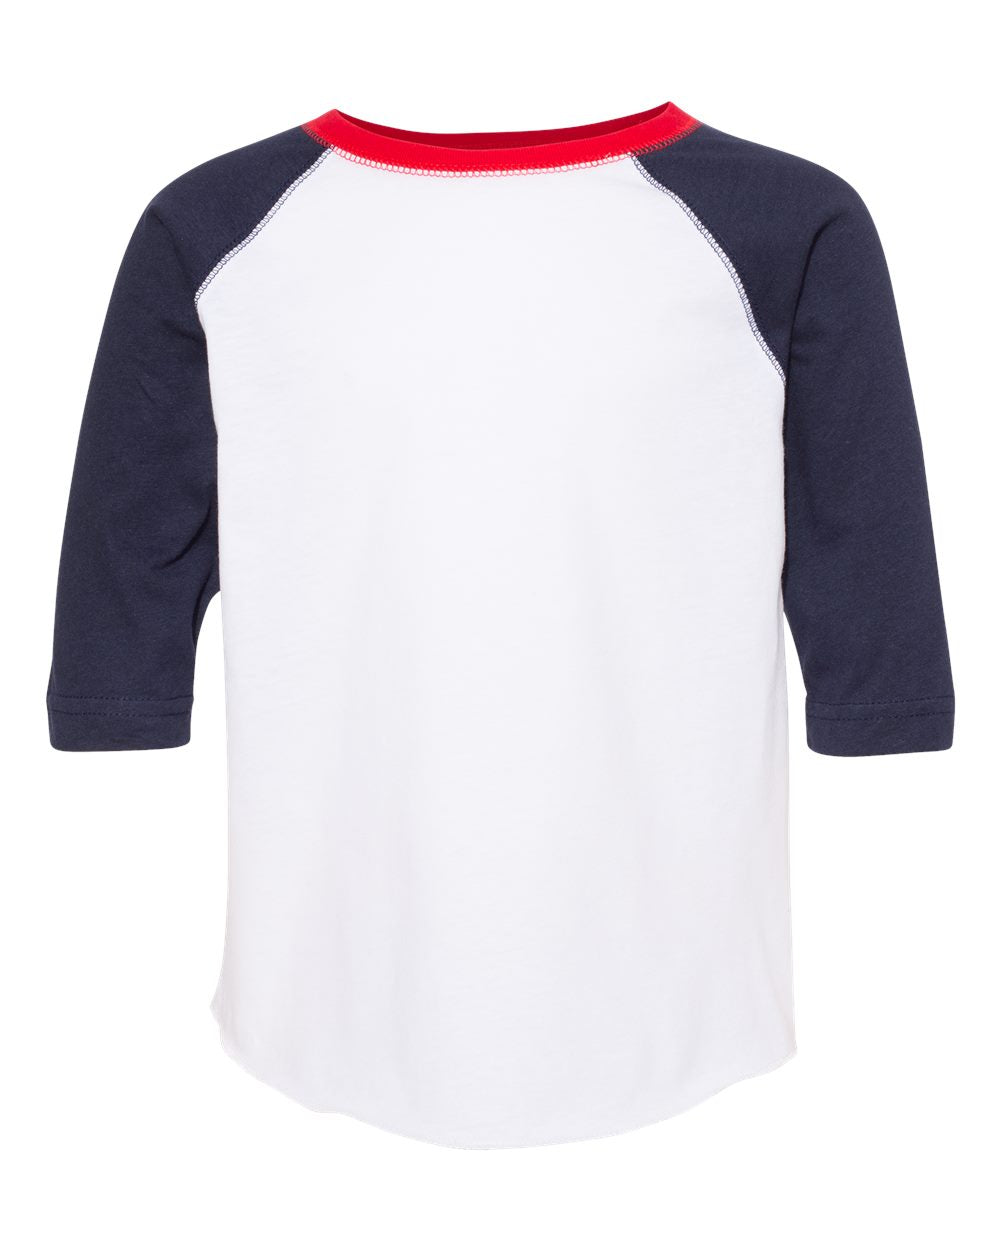 rabbit skins toddler baseball jersey tee white navy red